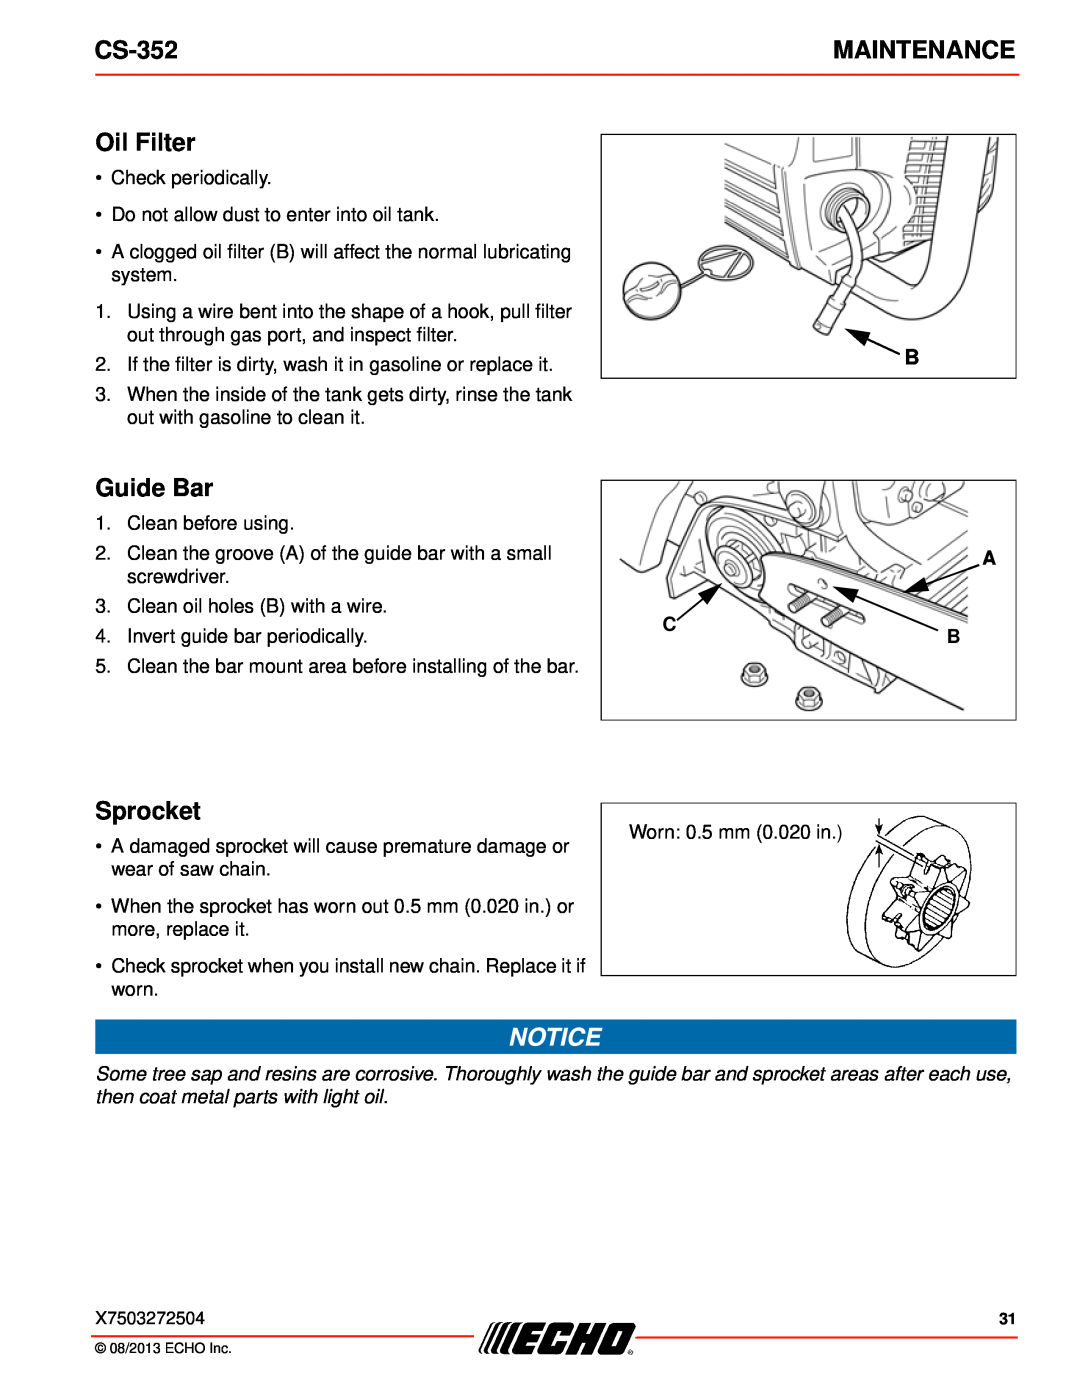 Echo CS-352 instruction manual Oil Filter, Sprocket, Maintenance, Guide Bar 